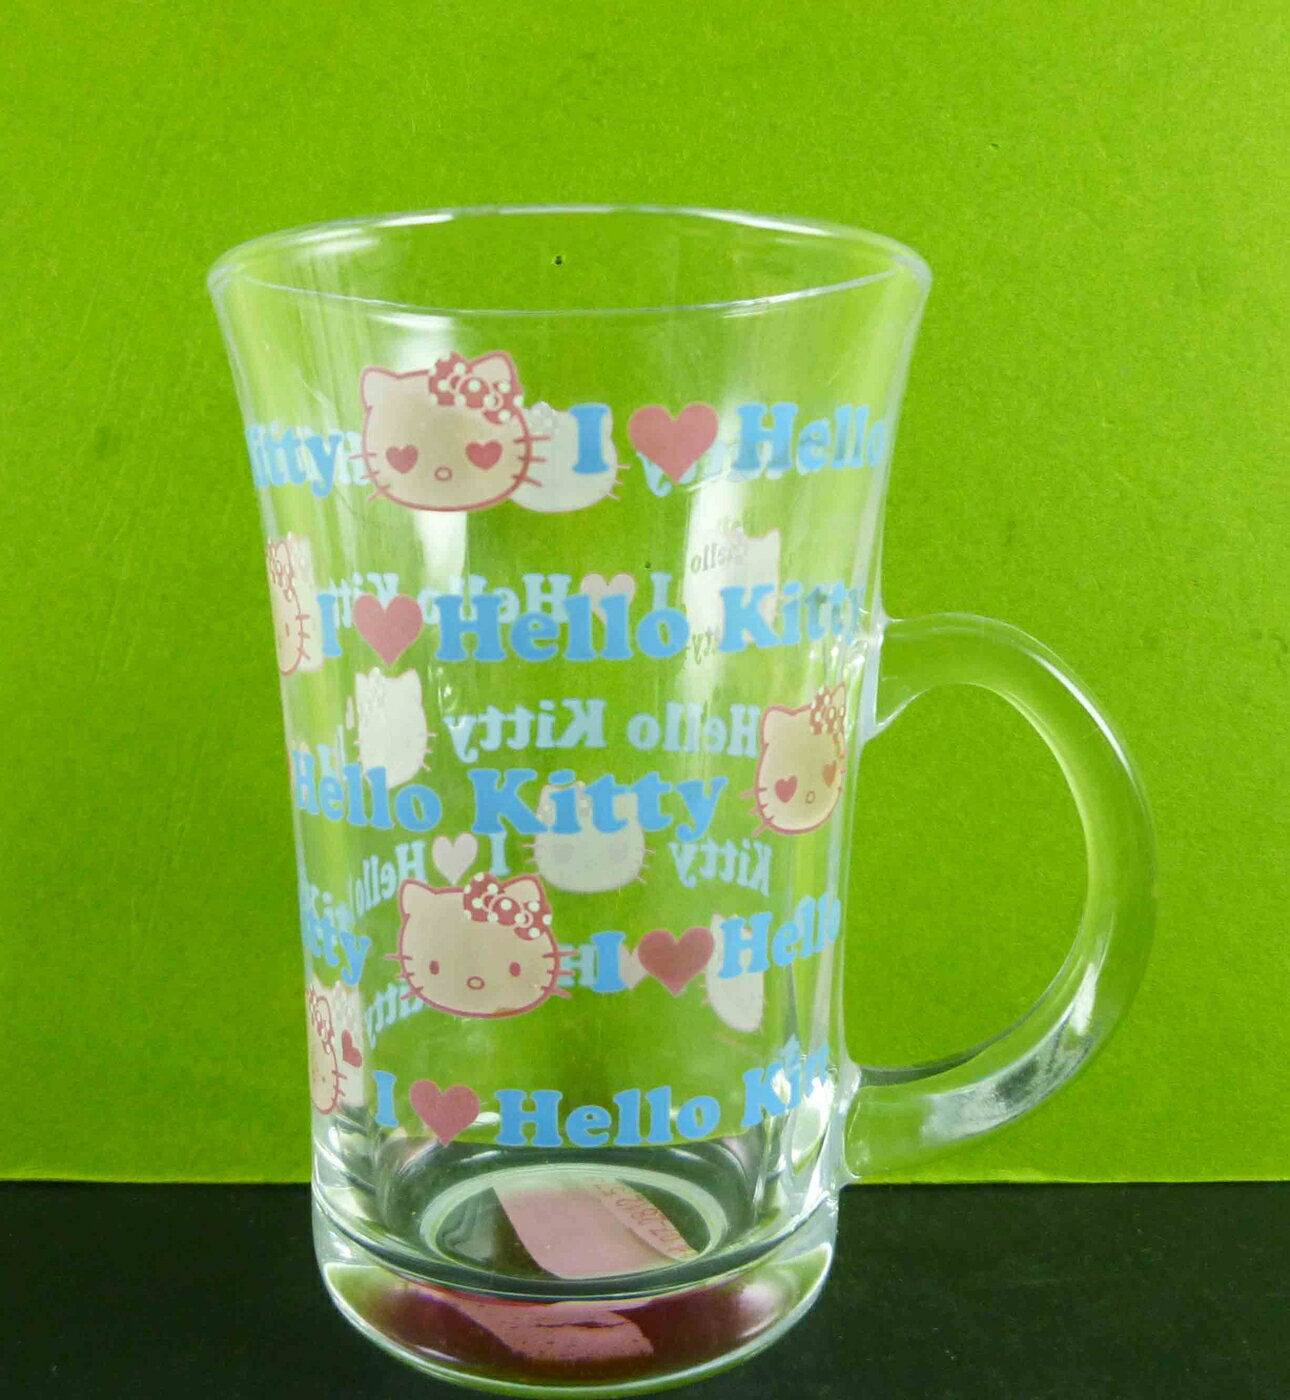 【震撼精品百貨】Hello Kitty 凱蒂貓 透明杯-英文 震撼日式精品百貨